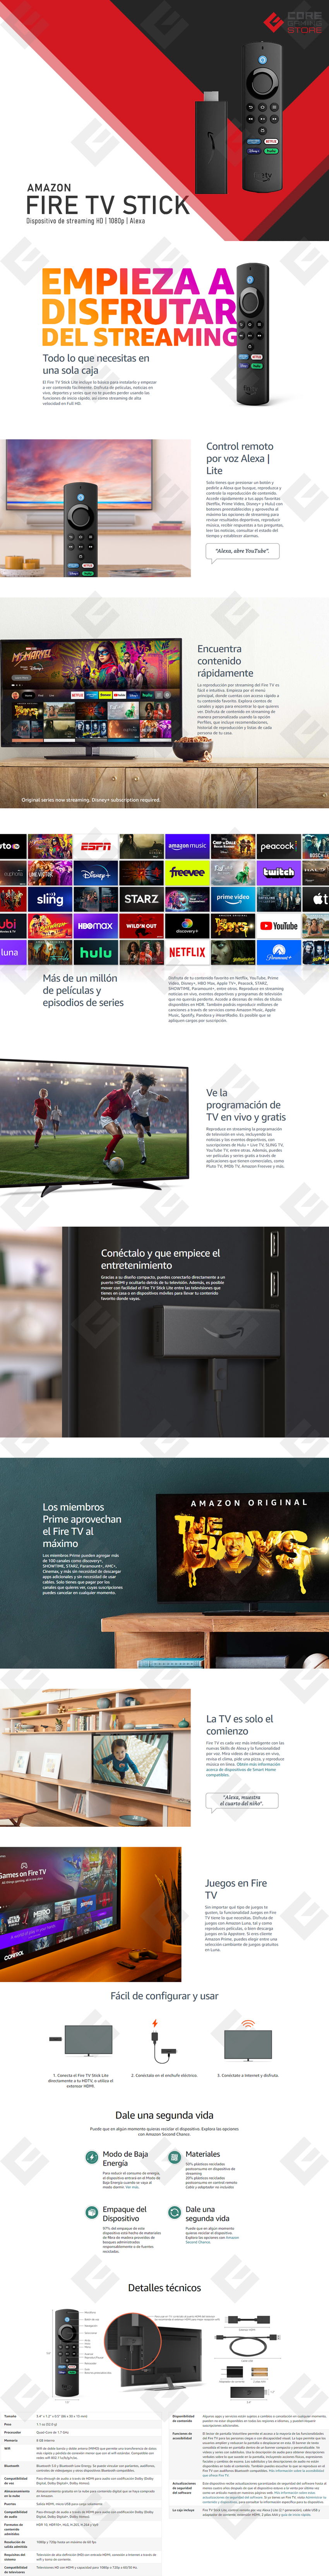 Amazon Fire TV Stick Lite con control de voz por Alexa | Dispositivo de Streaming HD | 1080p | 2nd Gen, B07YNLBS7R